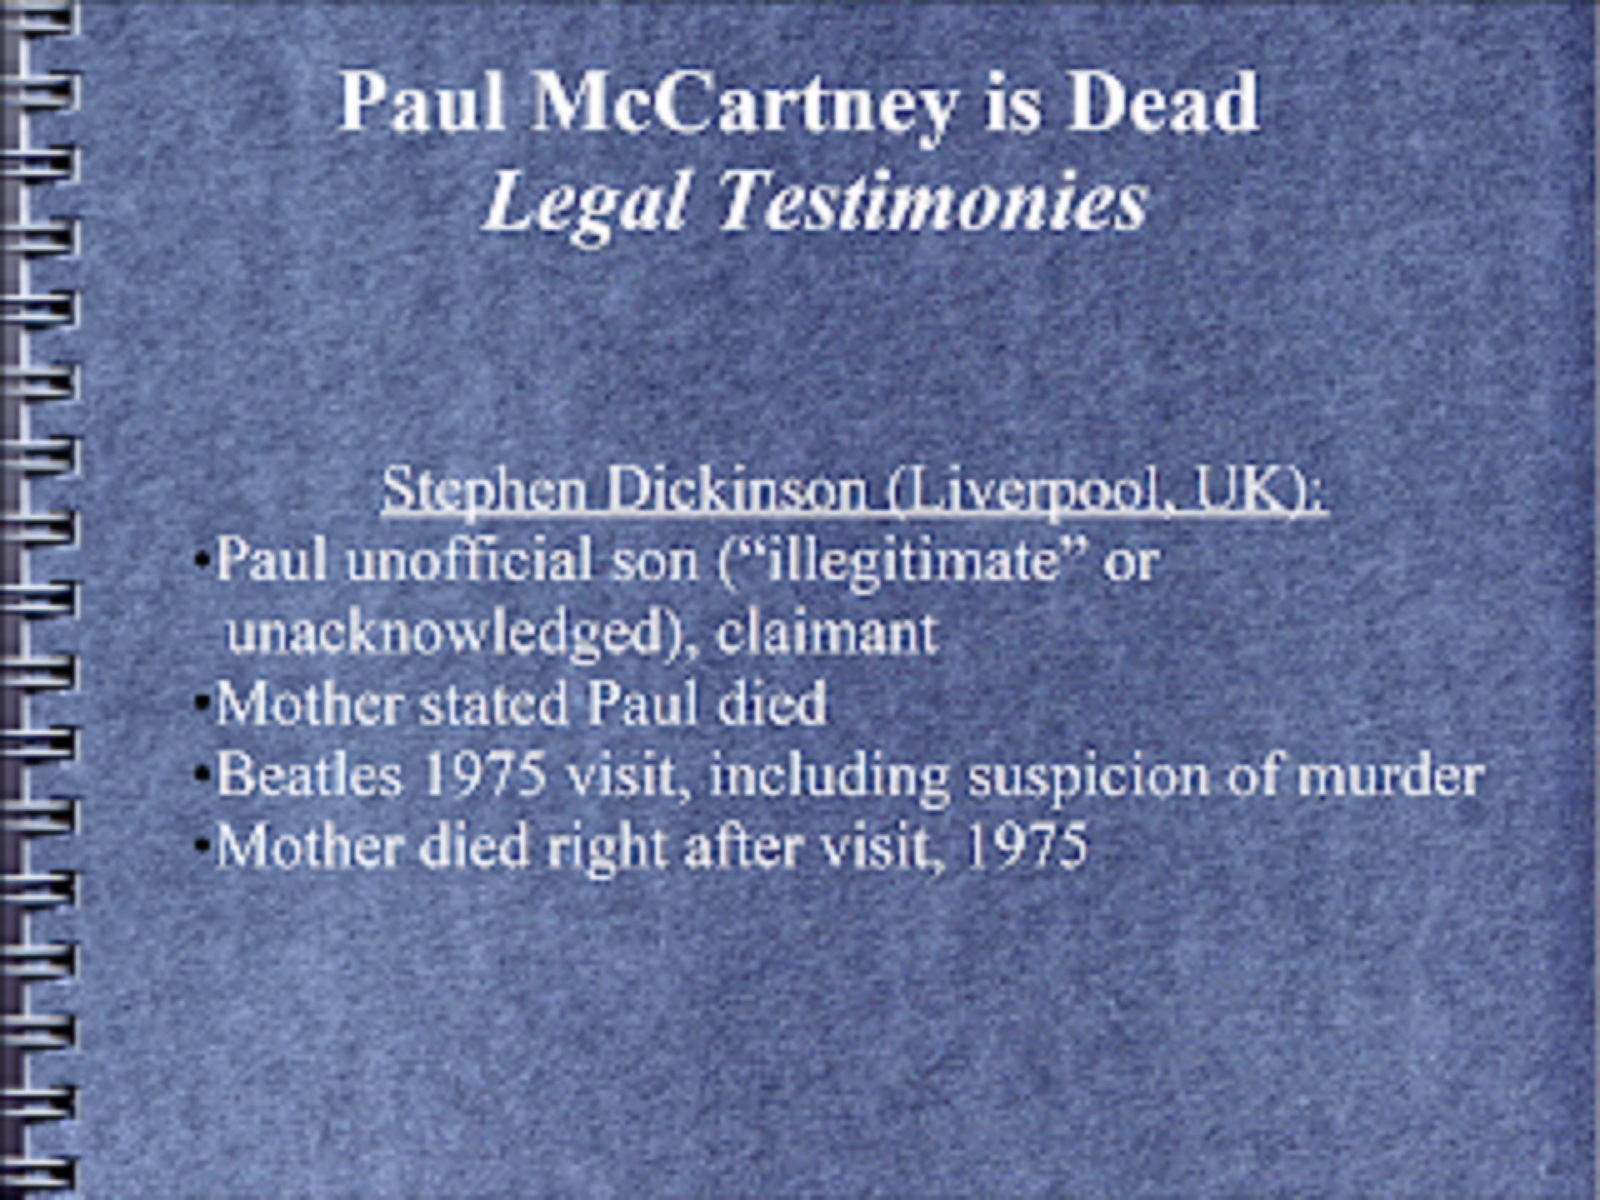 BEATLE PAUL McCARTNEY IS DEAD - LEGAL TESTIMONIES